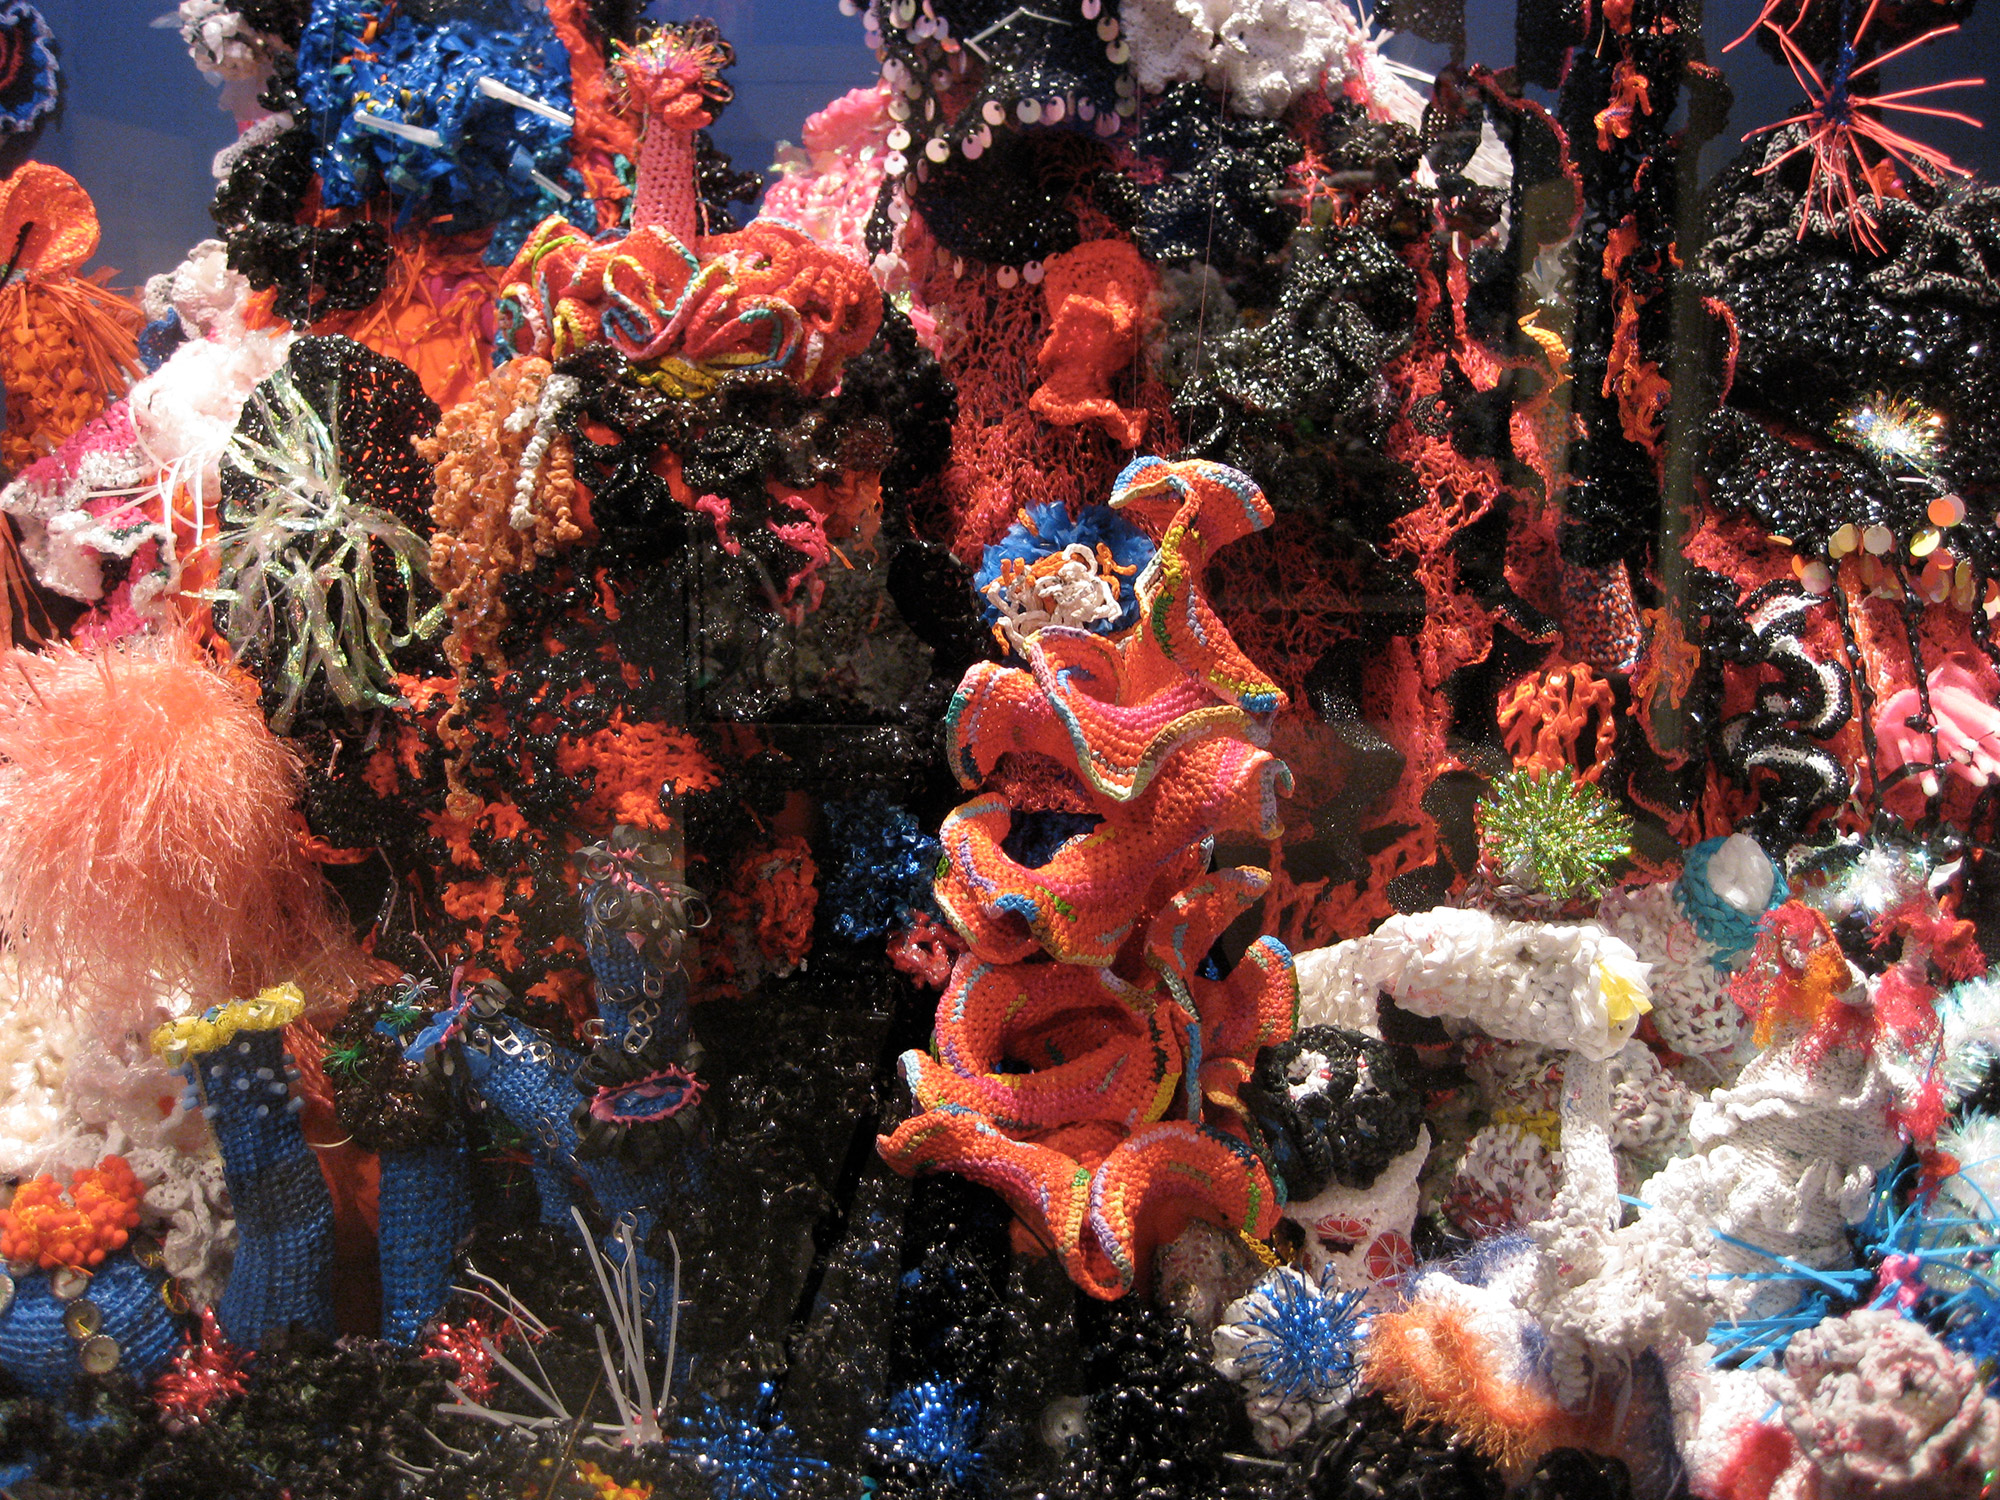 Reef sculptures